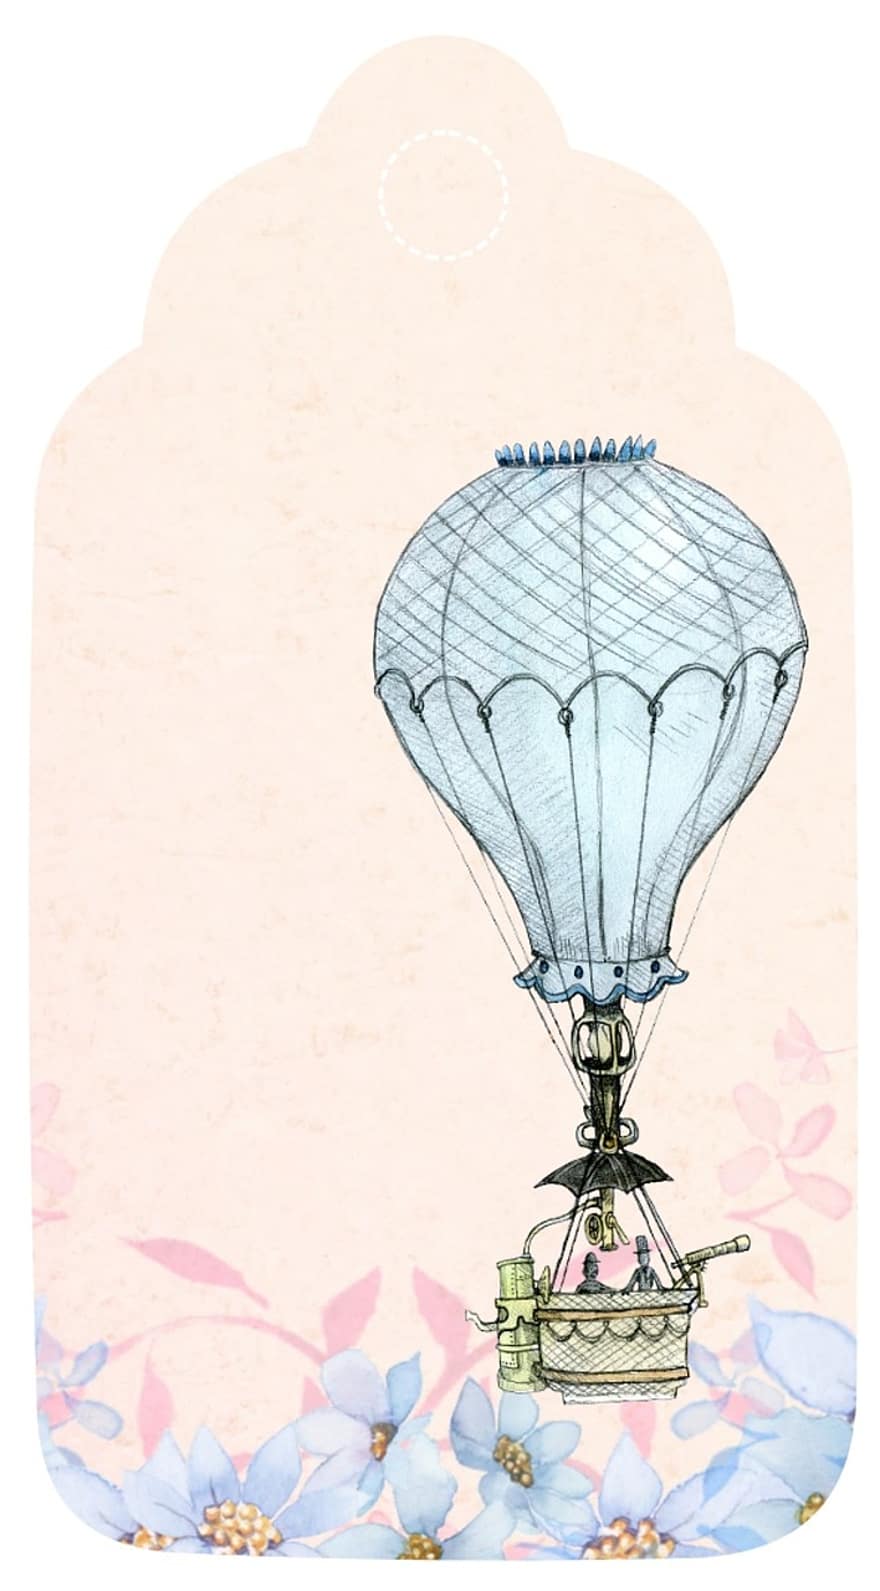 воздушный шар, тег, романтик, альбом, розовый, синий, птица, марочный, приветствие, украшение, карта